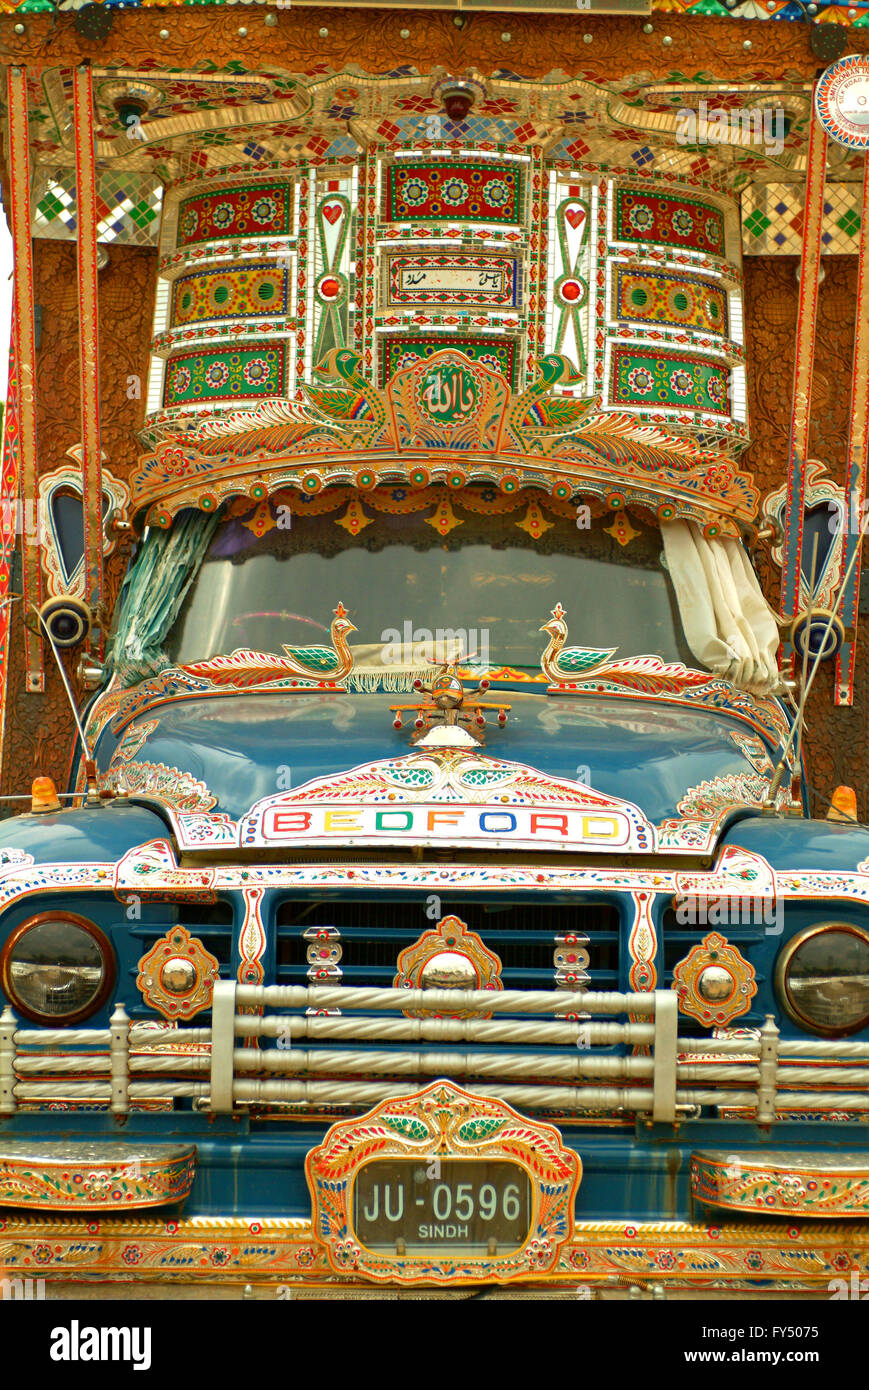 Nahen Osten Oman ein Detail eines bunten LKW mit geschnitztem Holz, Glasperlen verziert Stockfoto